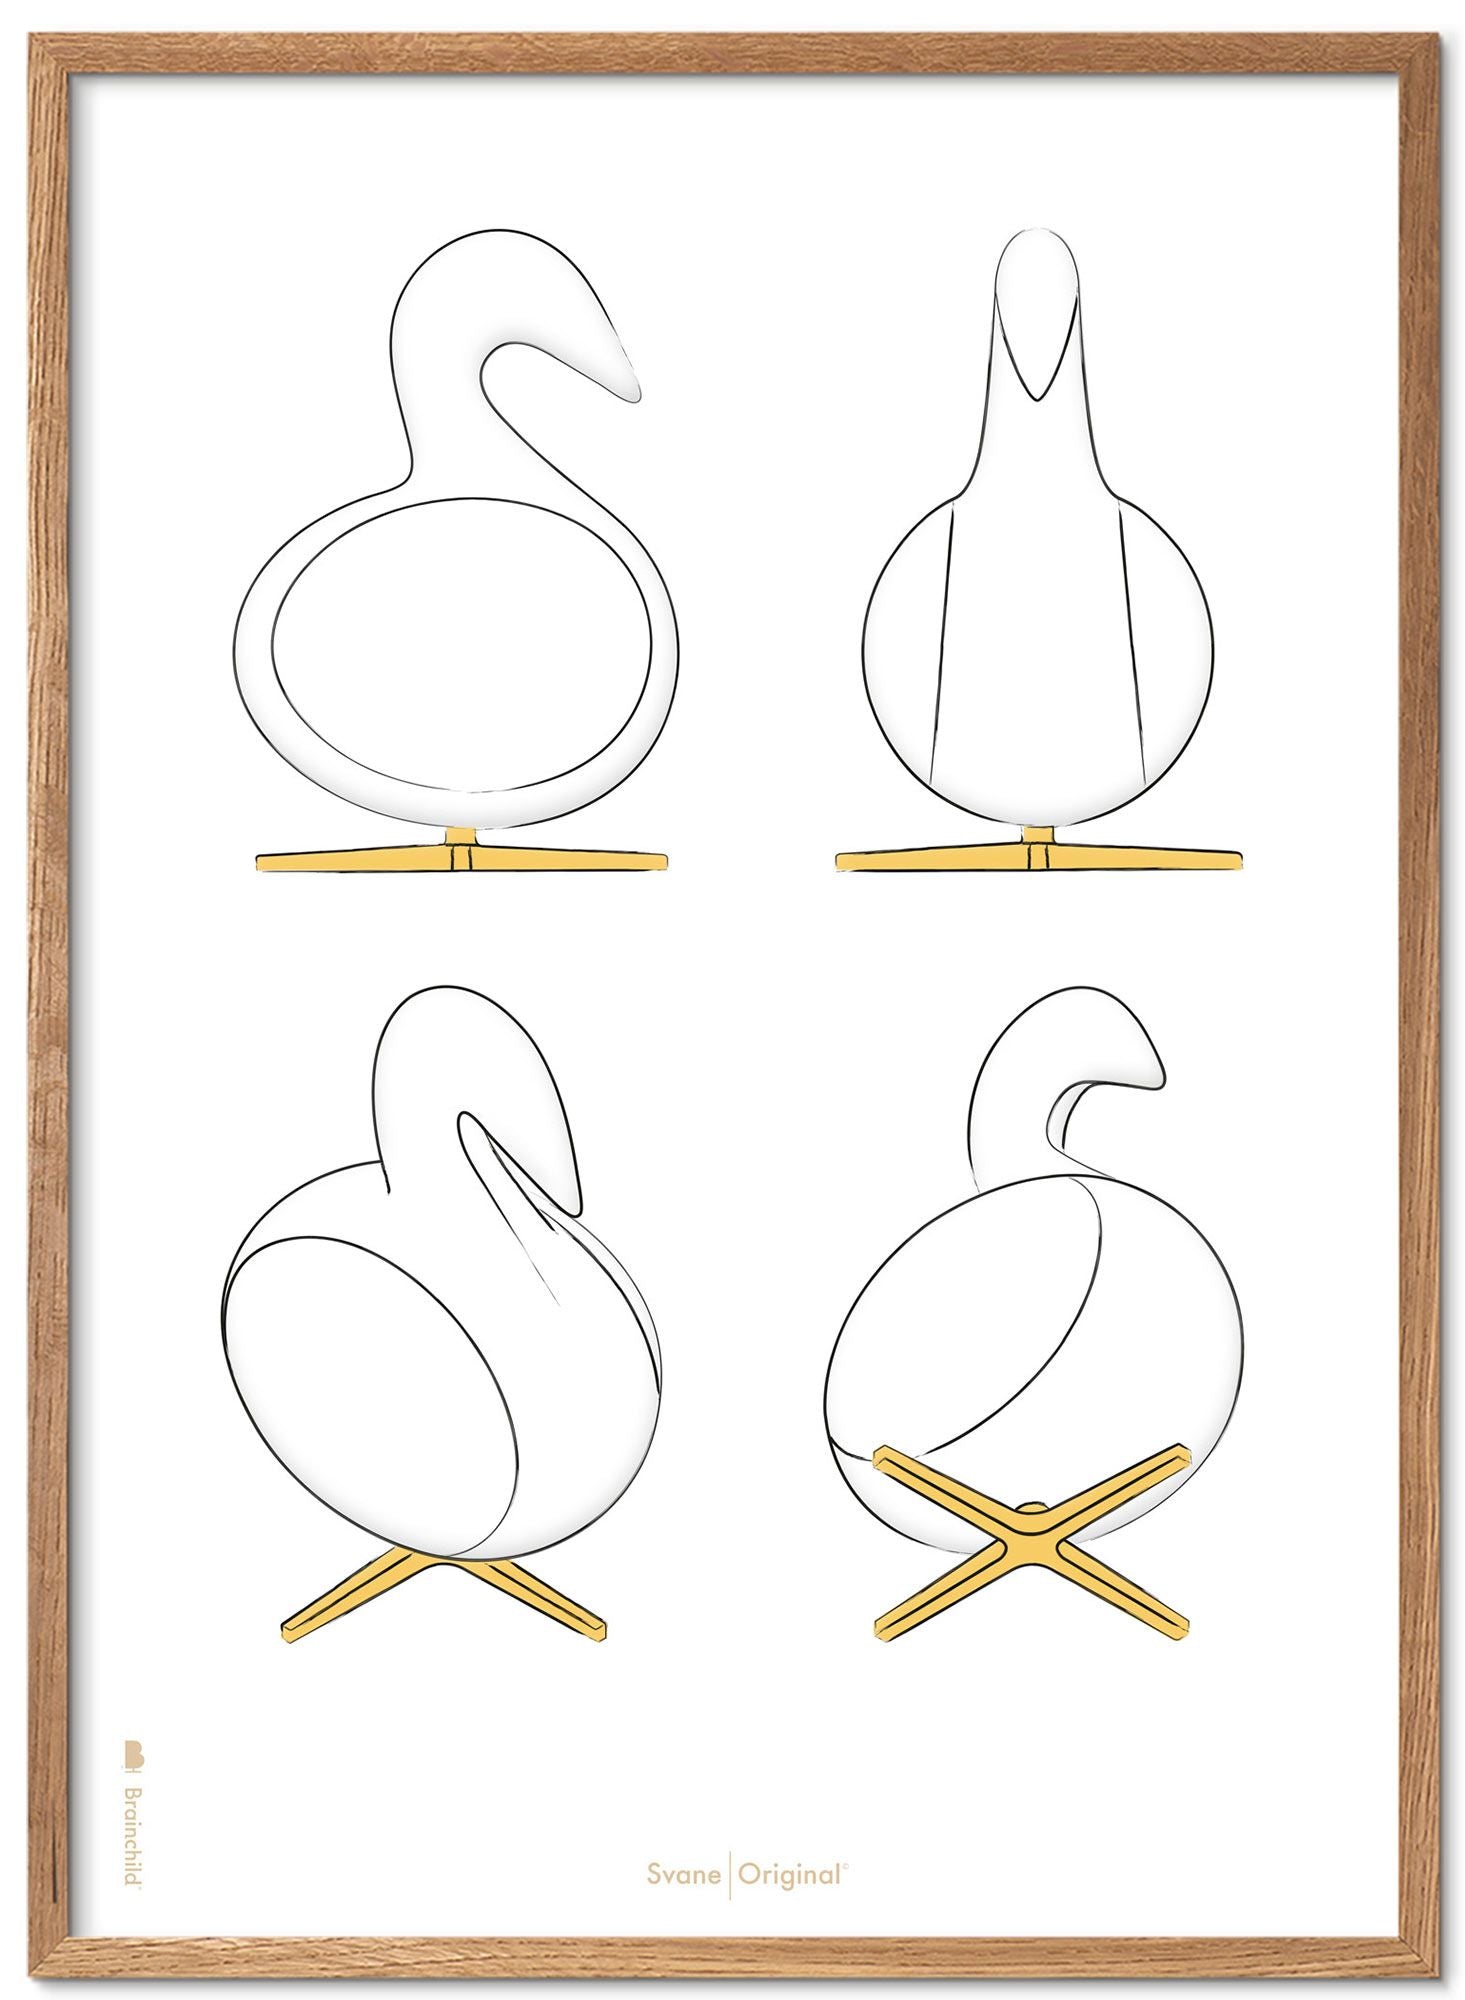 Brainchild Swan Design Sketches Poster Frame lavet af let træ 30x40 cm, hvid baggrund